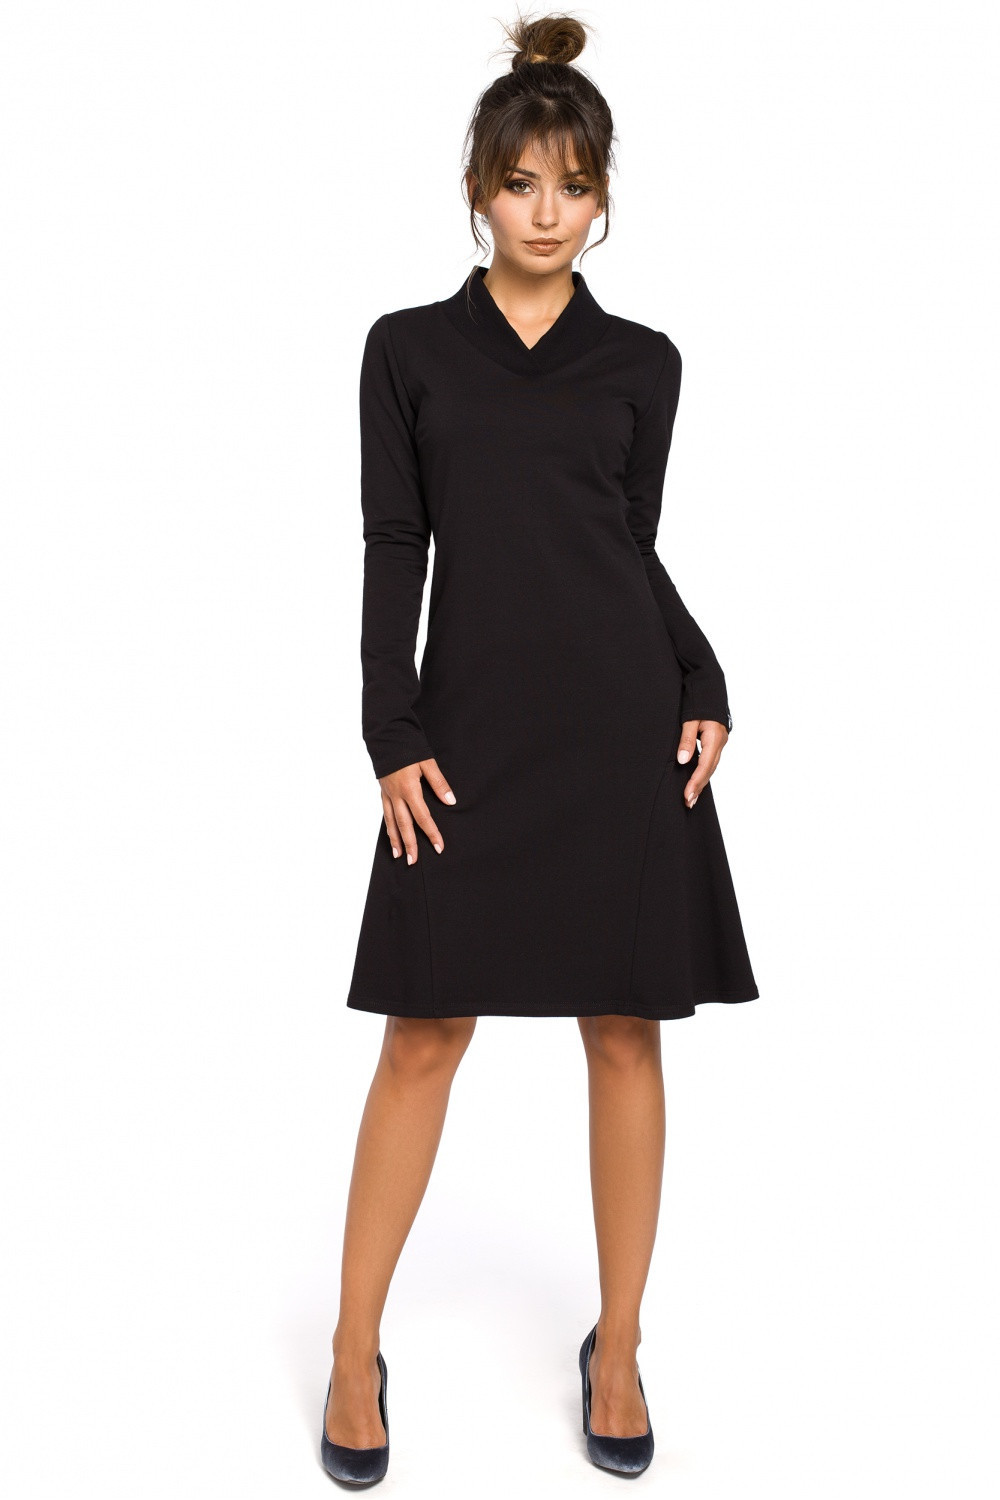 Dámské šaty model 17289622 - BeWear Velikost: M-38, Barvy: černá